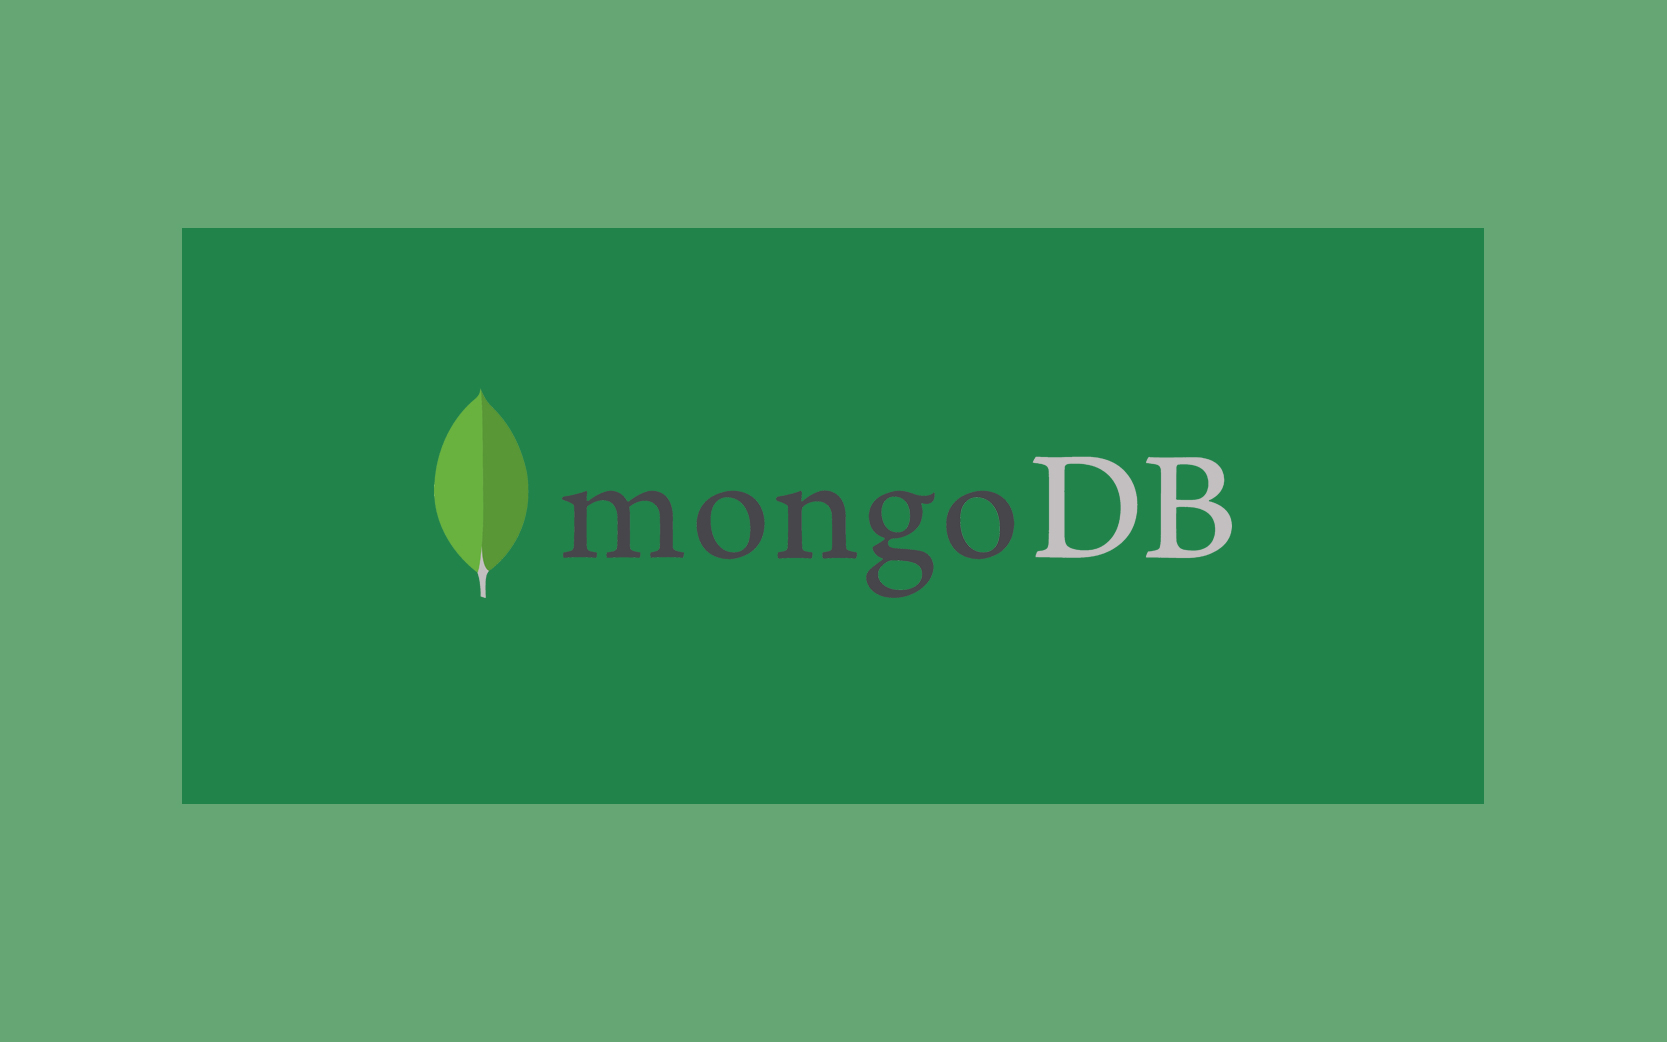 MongoDB-training-in-bangalore-by-zekelabs